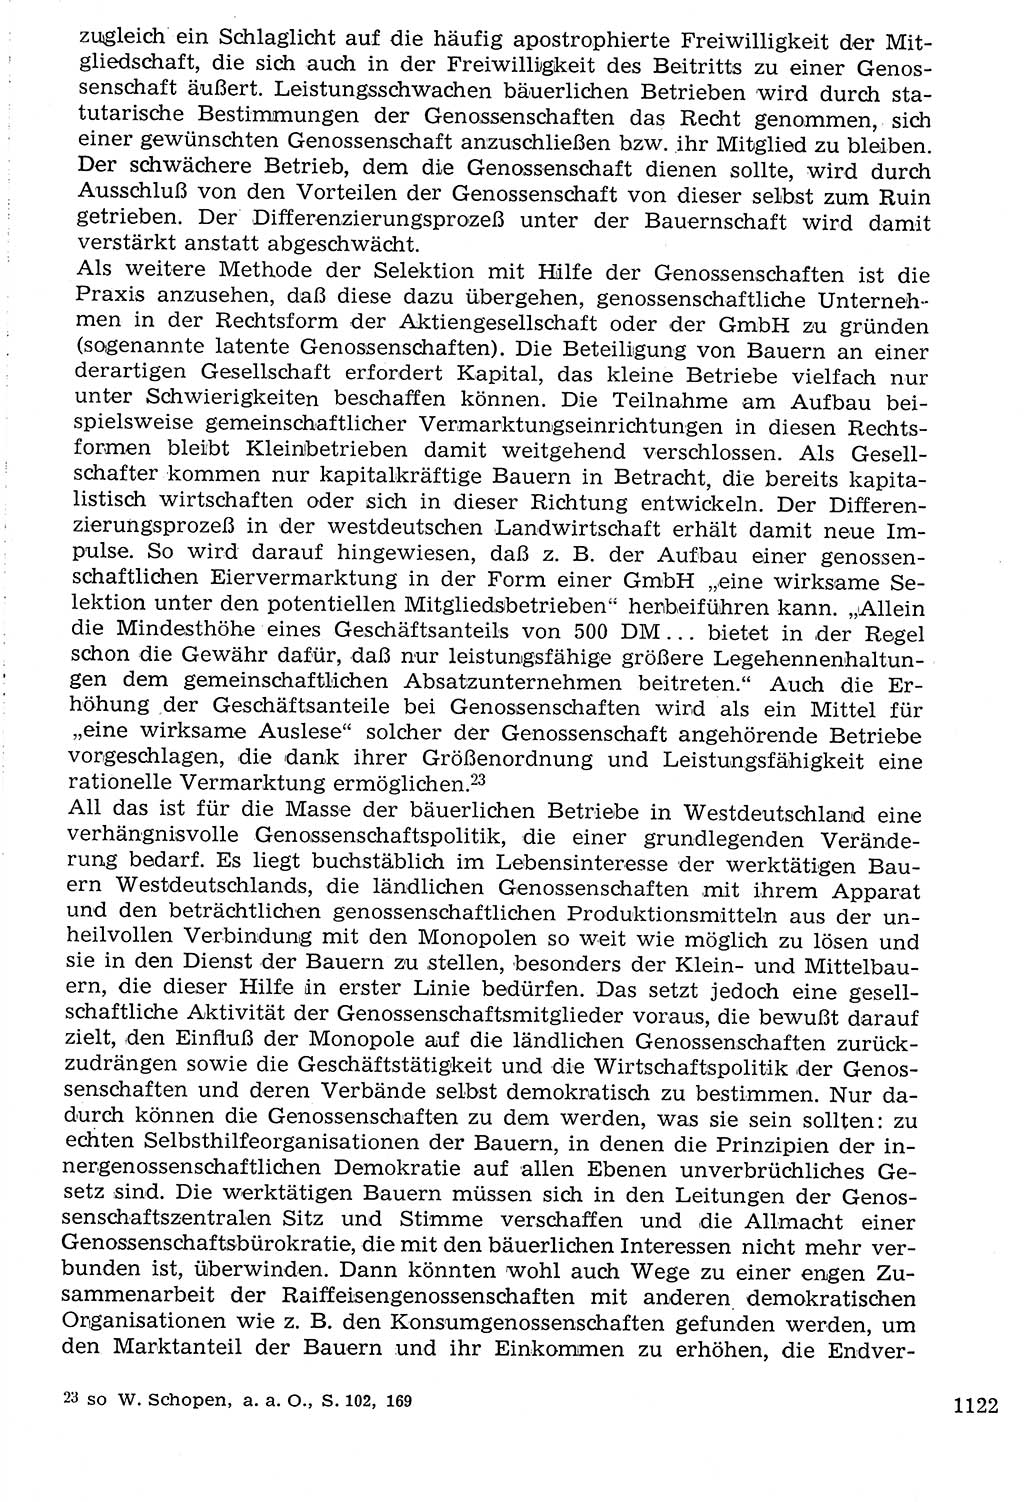 Staat und Recht (StuR), 17. Jahrgang [Deutsche Demokratische Republik (DDR)] 1968, Seite 1122 (StuR DDR 1968, S. 1122)